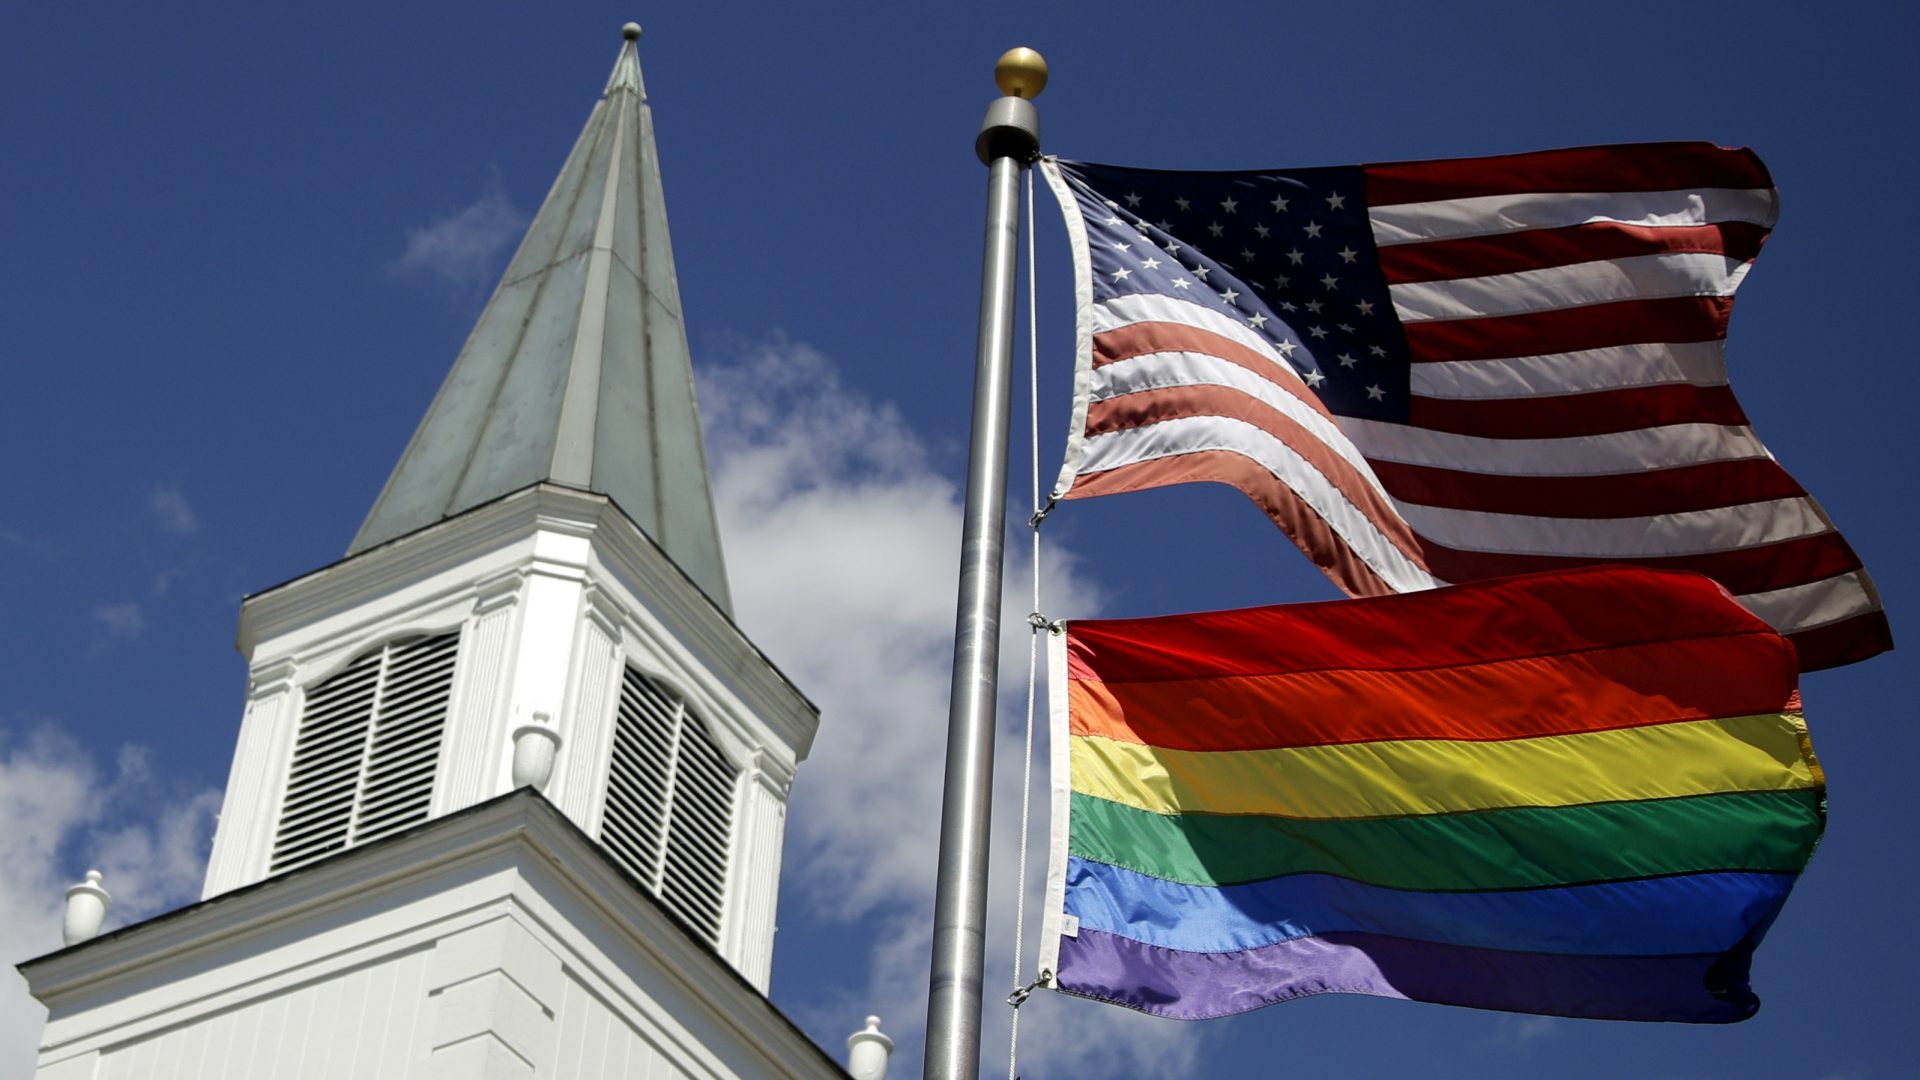 A rainbow gay pride flag flies below the U.S. flag last year in front of the Asbury United Methodist Church in Prairie Village, Kan.